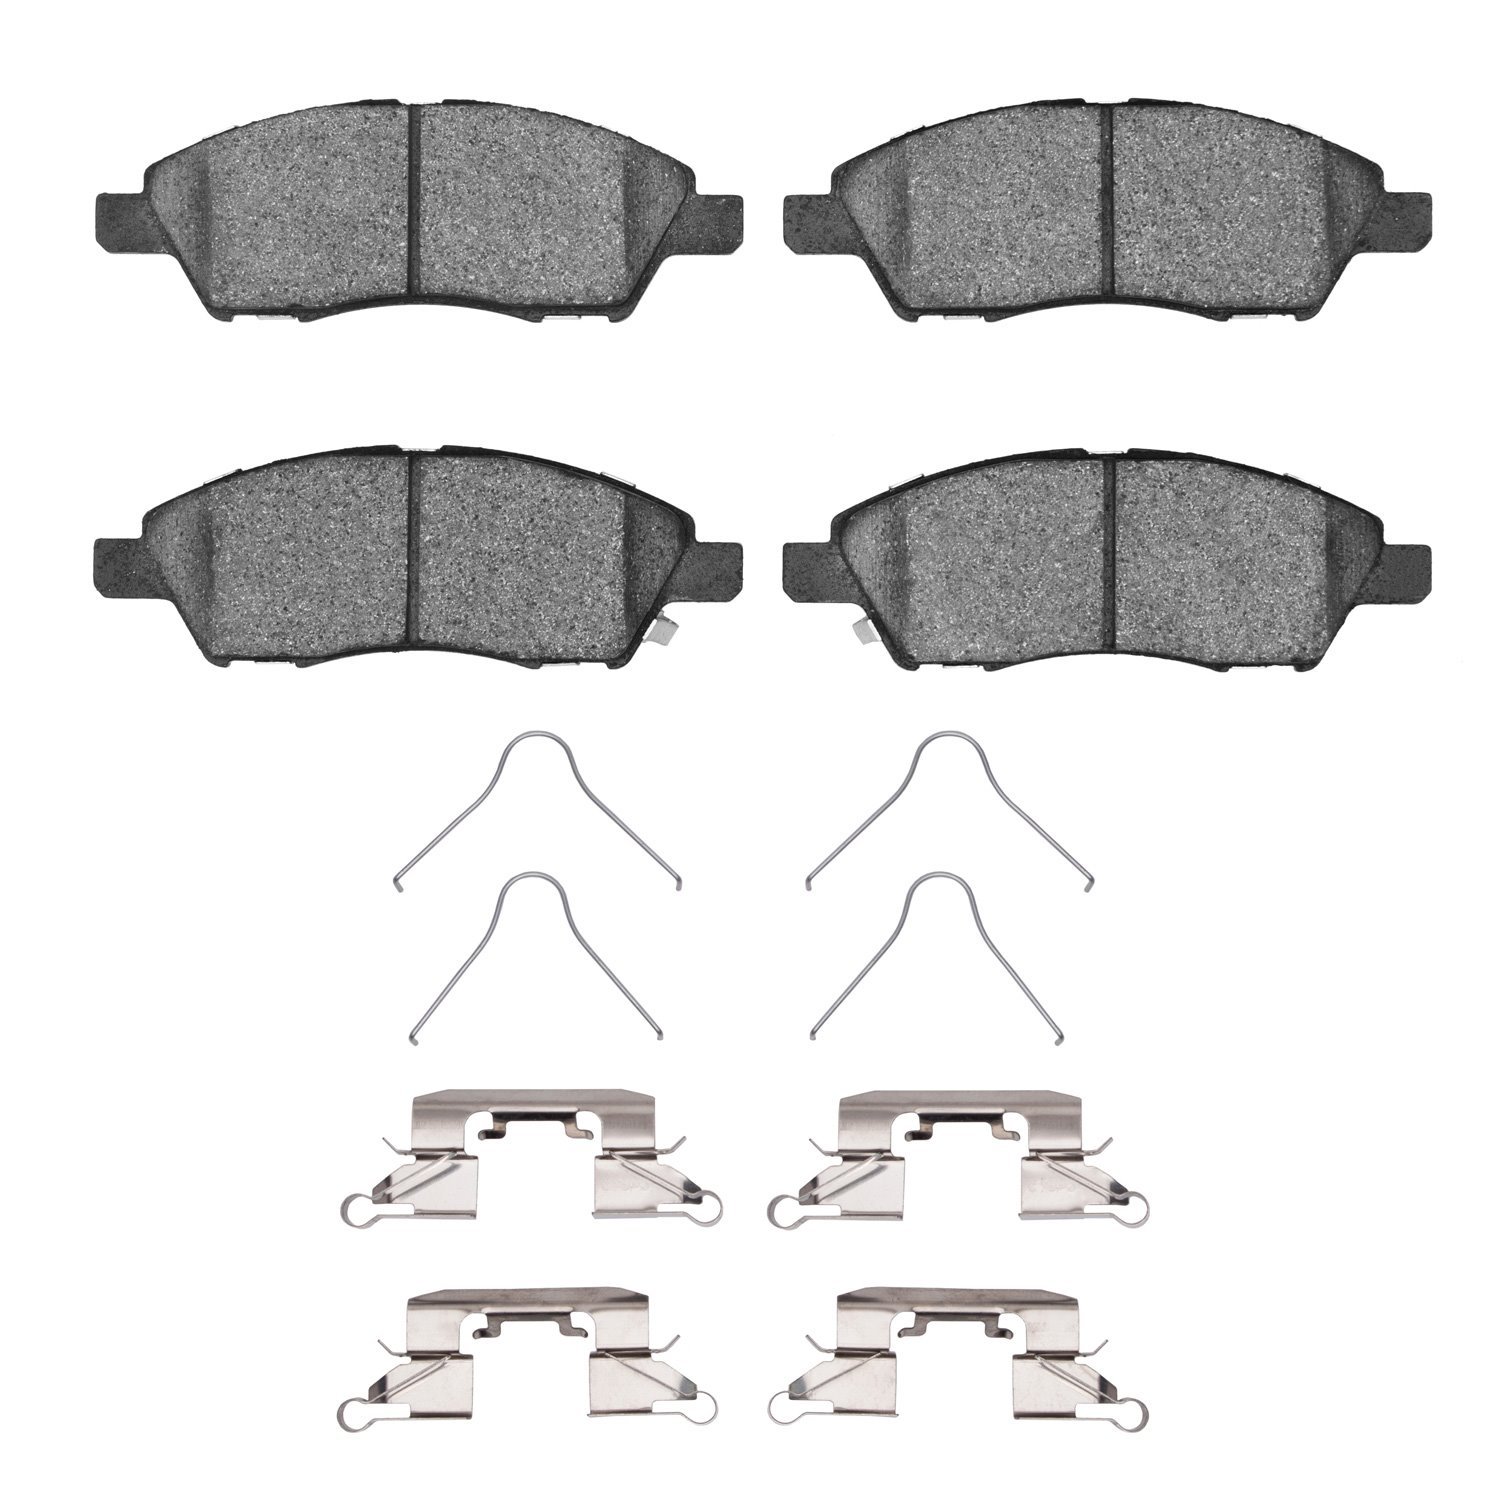 1310-1592-01 3000-Series Ceramic Brake Pads & Hardware Kit, 2011-2019 Infiniti/Nissan, Position: Front